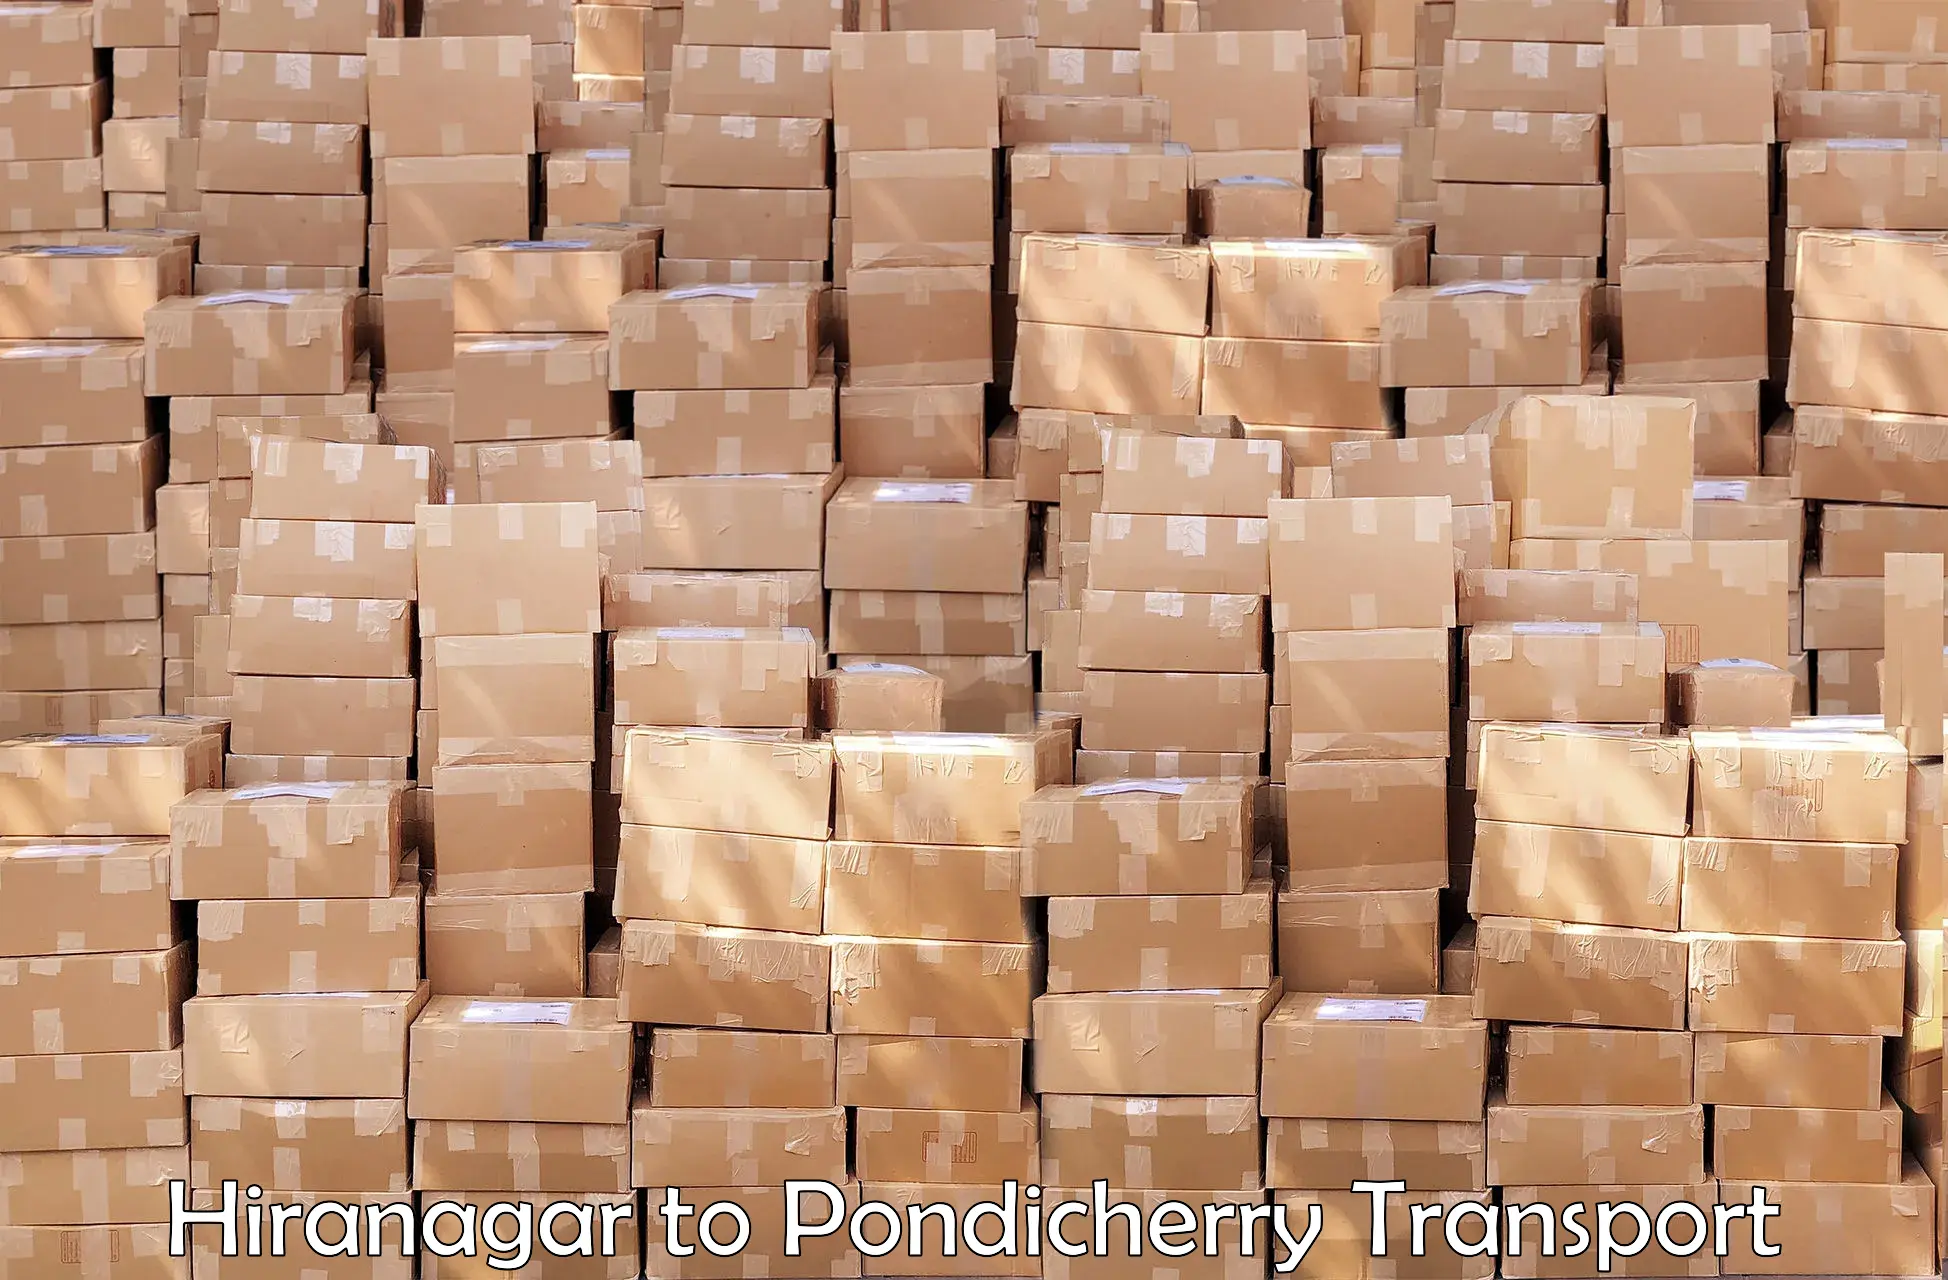 International cargo transportation services Hiranagar to Pondicherry